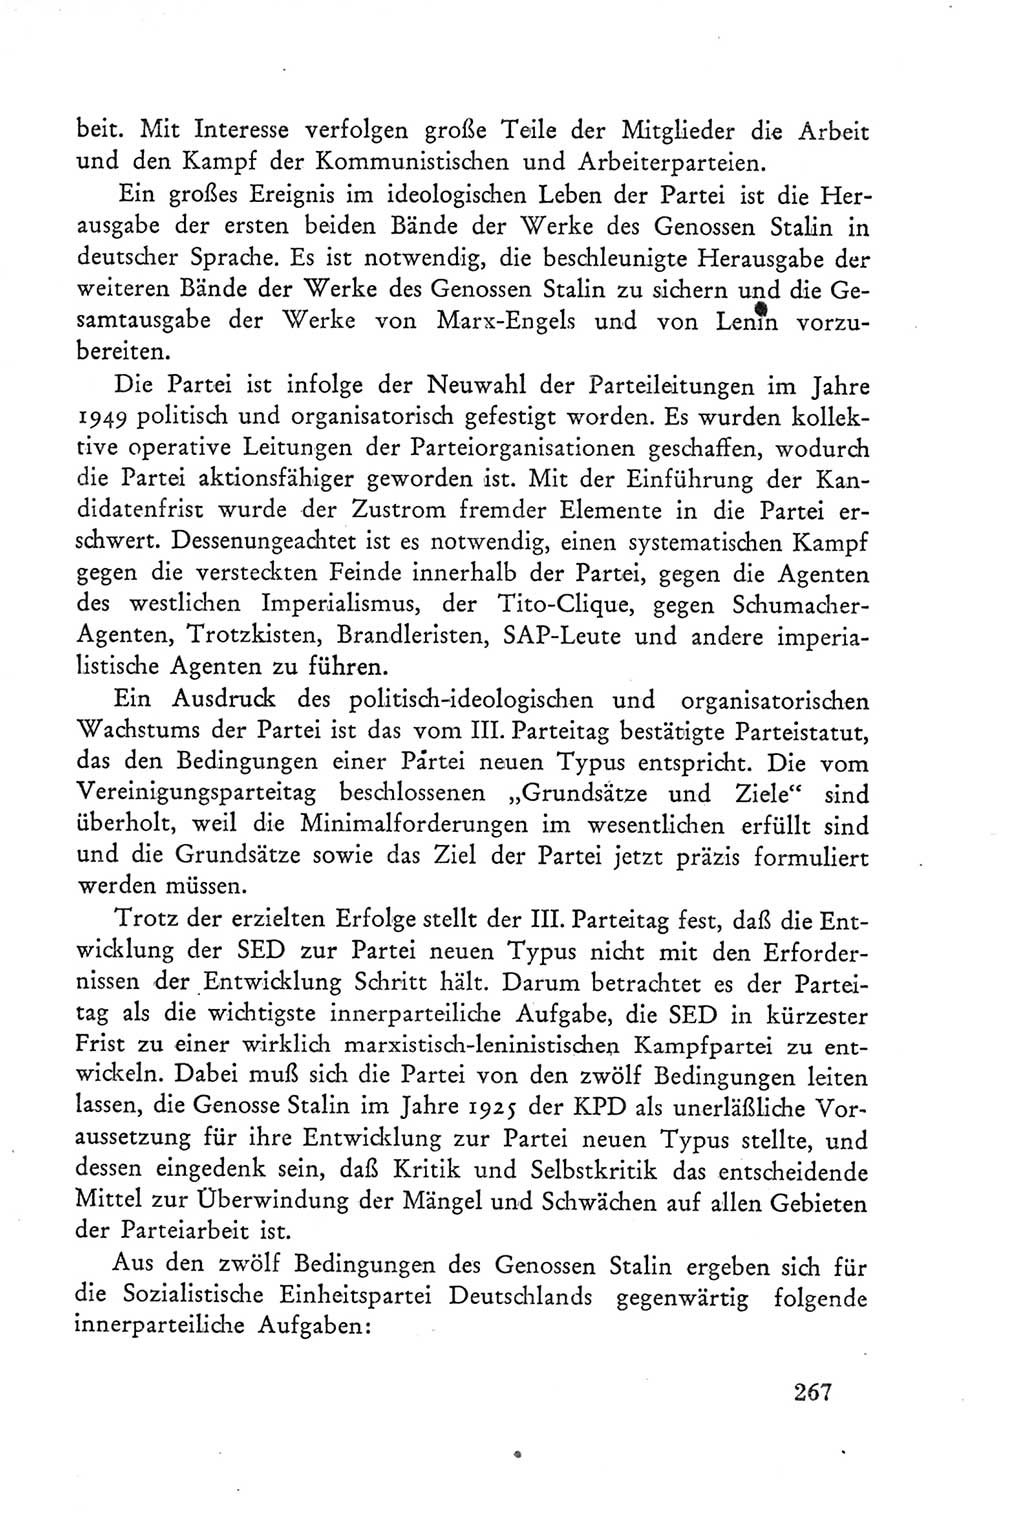 Protokoll der Verhandlungen des Ⅲ. Parteitages der Sozialistischen Einheitspartei Deutschlands (SED) [Deutsche Demokratische Republik (DDR)] 1950, Band 2, Seite 267 (Prot. Verh. Ⅲ. PT SED DDR 1950, Bd. 2, S. 267)